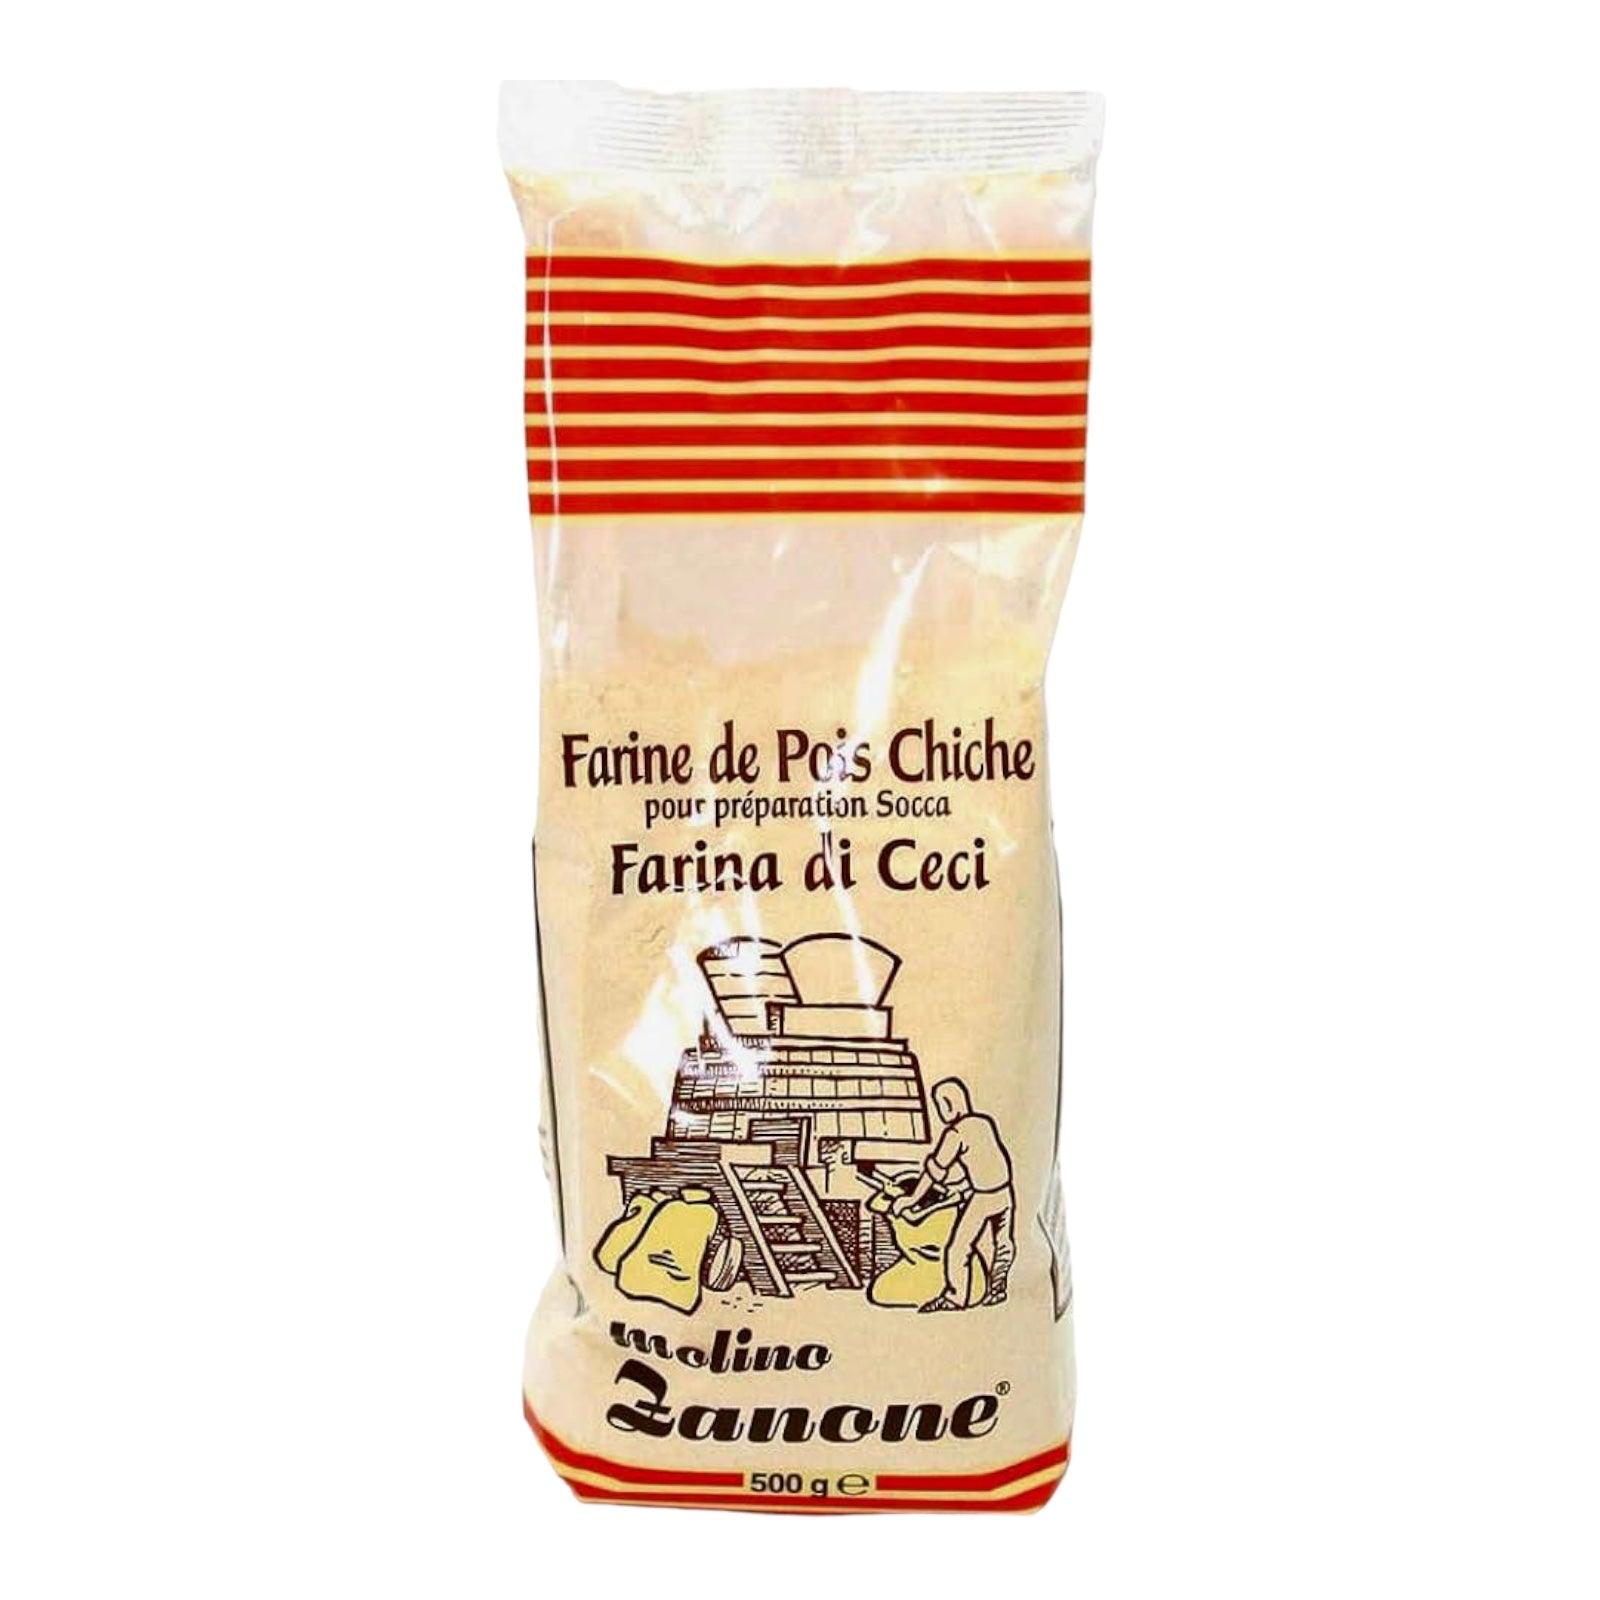 Molino Zanone Farina di Ceci Chickpeas Flour 500g